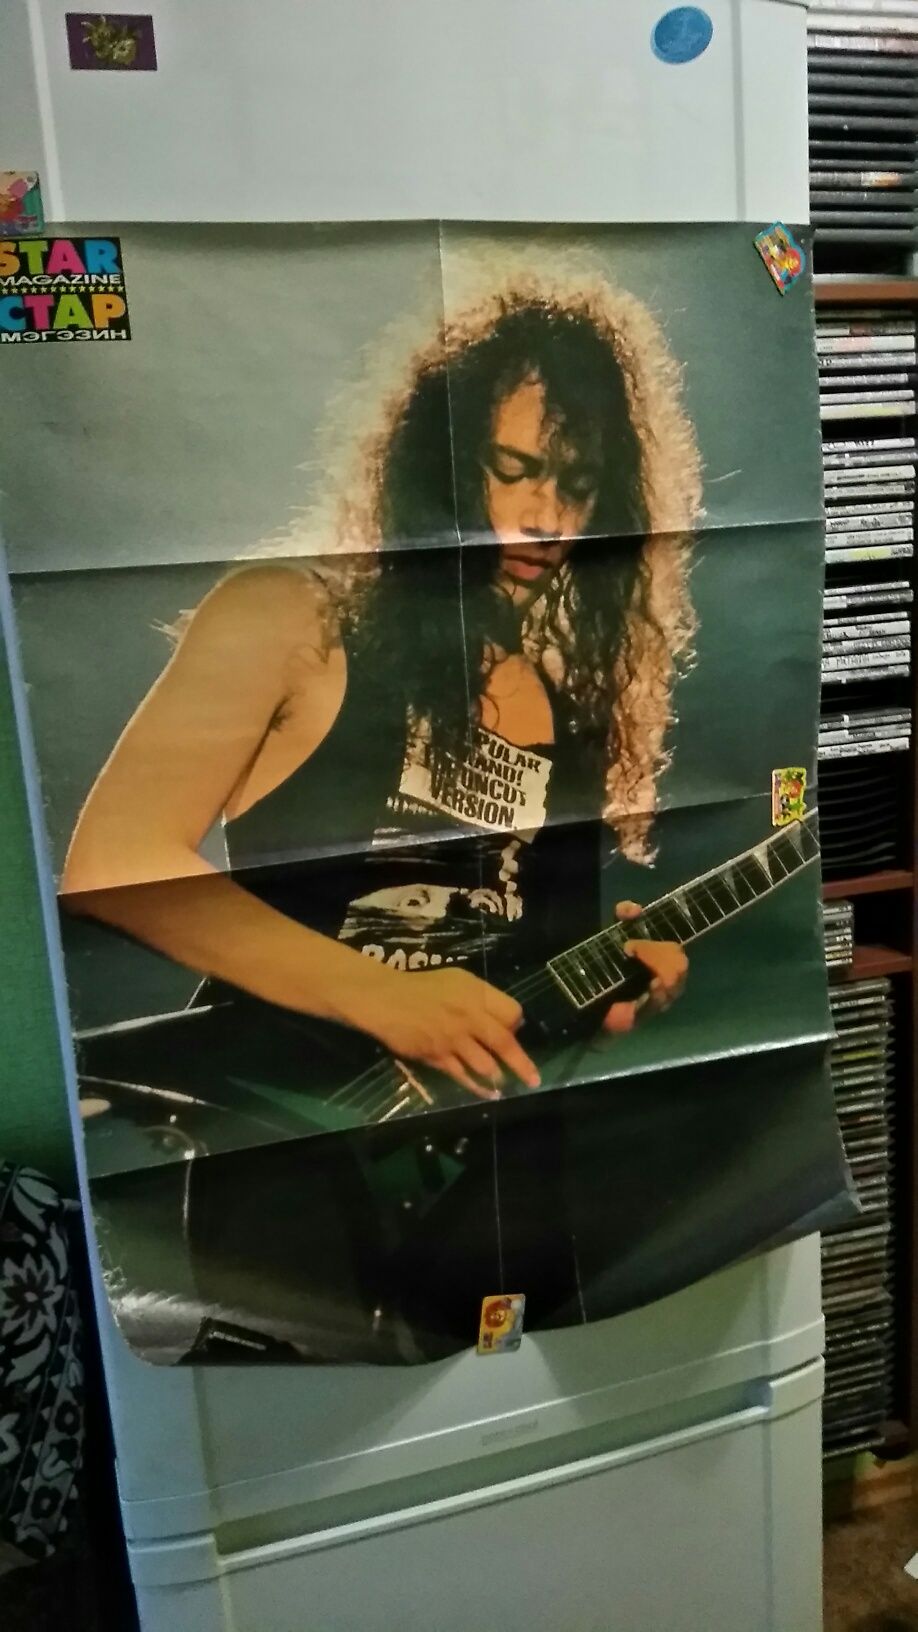 Постеры плакаты рок группы rock metal